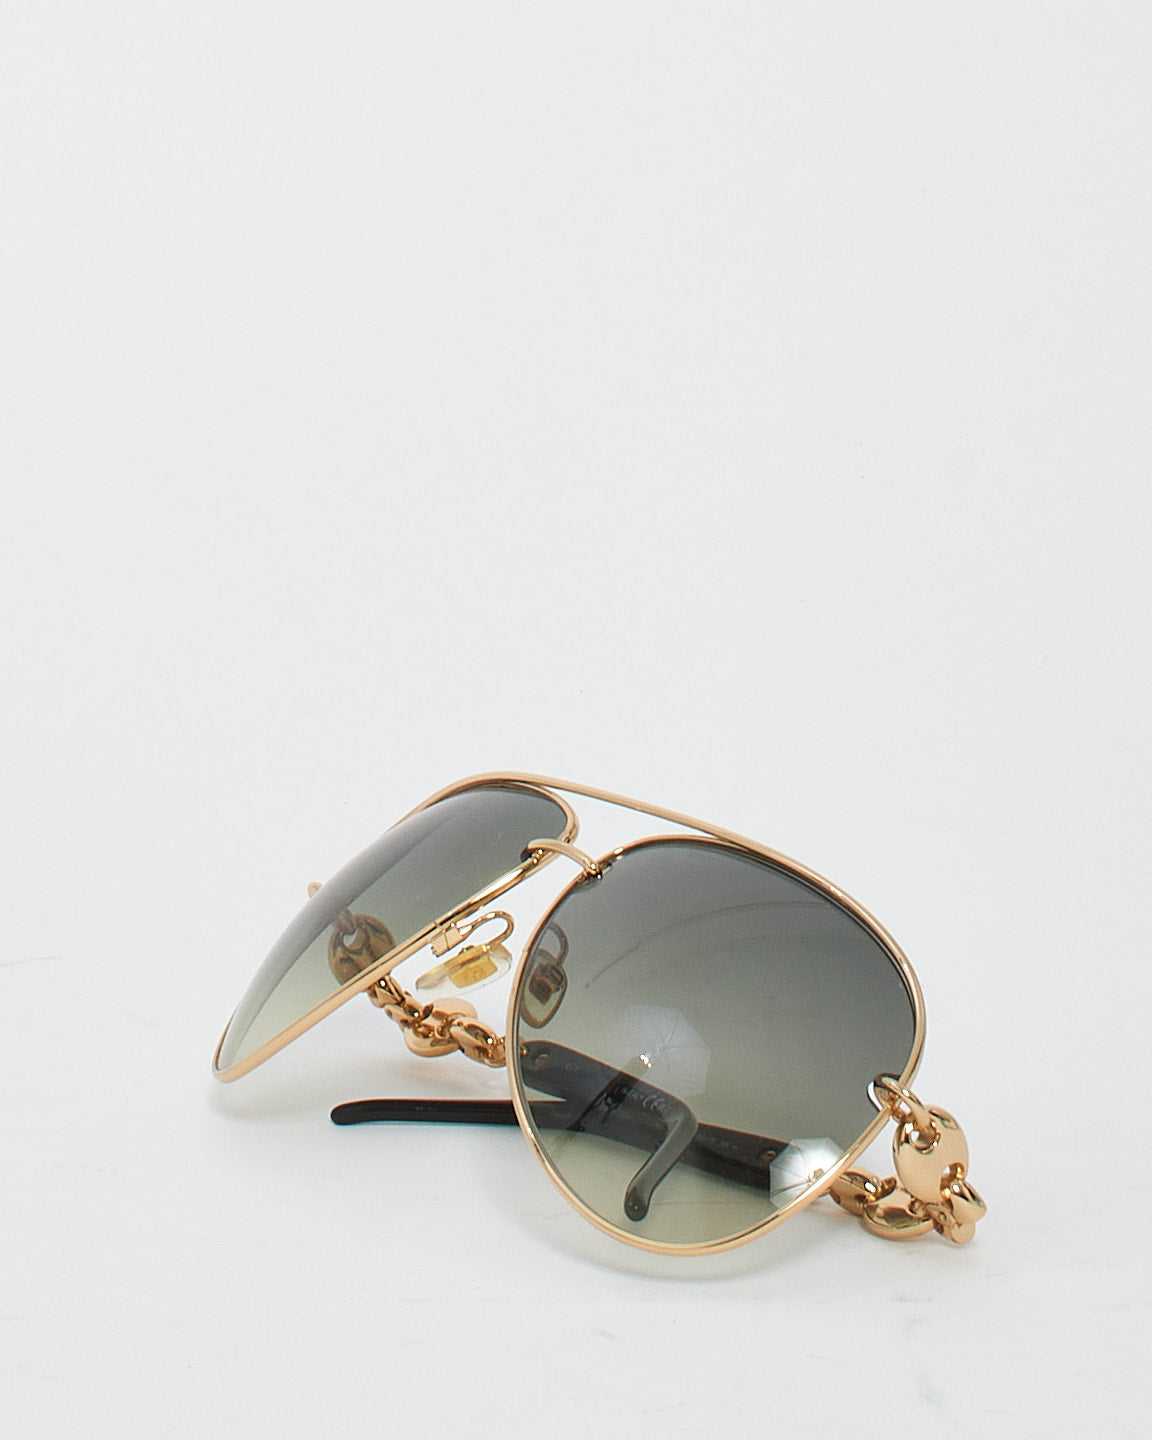 Gucci Lunettes de soleil aviateur à verres foncés dégradés avec chaîne dorée